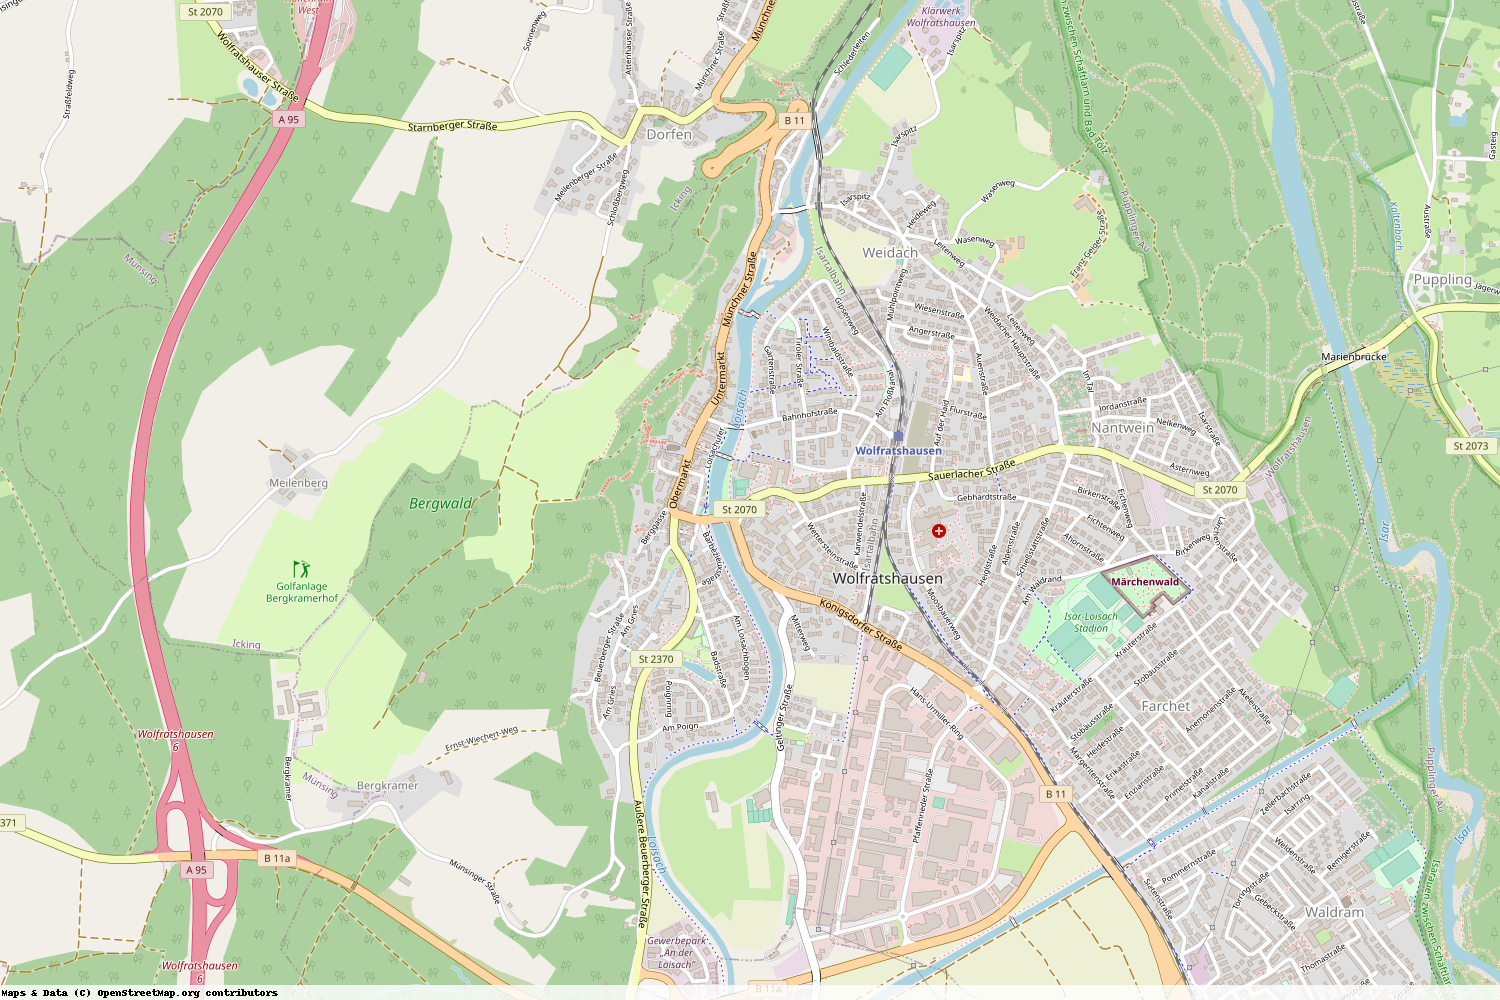 Ist gerade Stromausfall in Bayern - Bad Tölz-Wolfratshausen - Wolfratshausen?